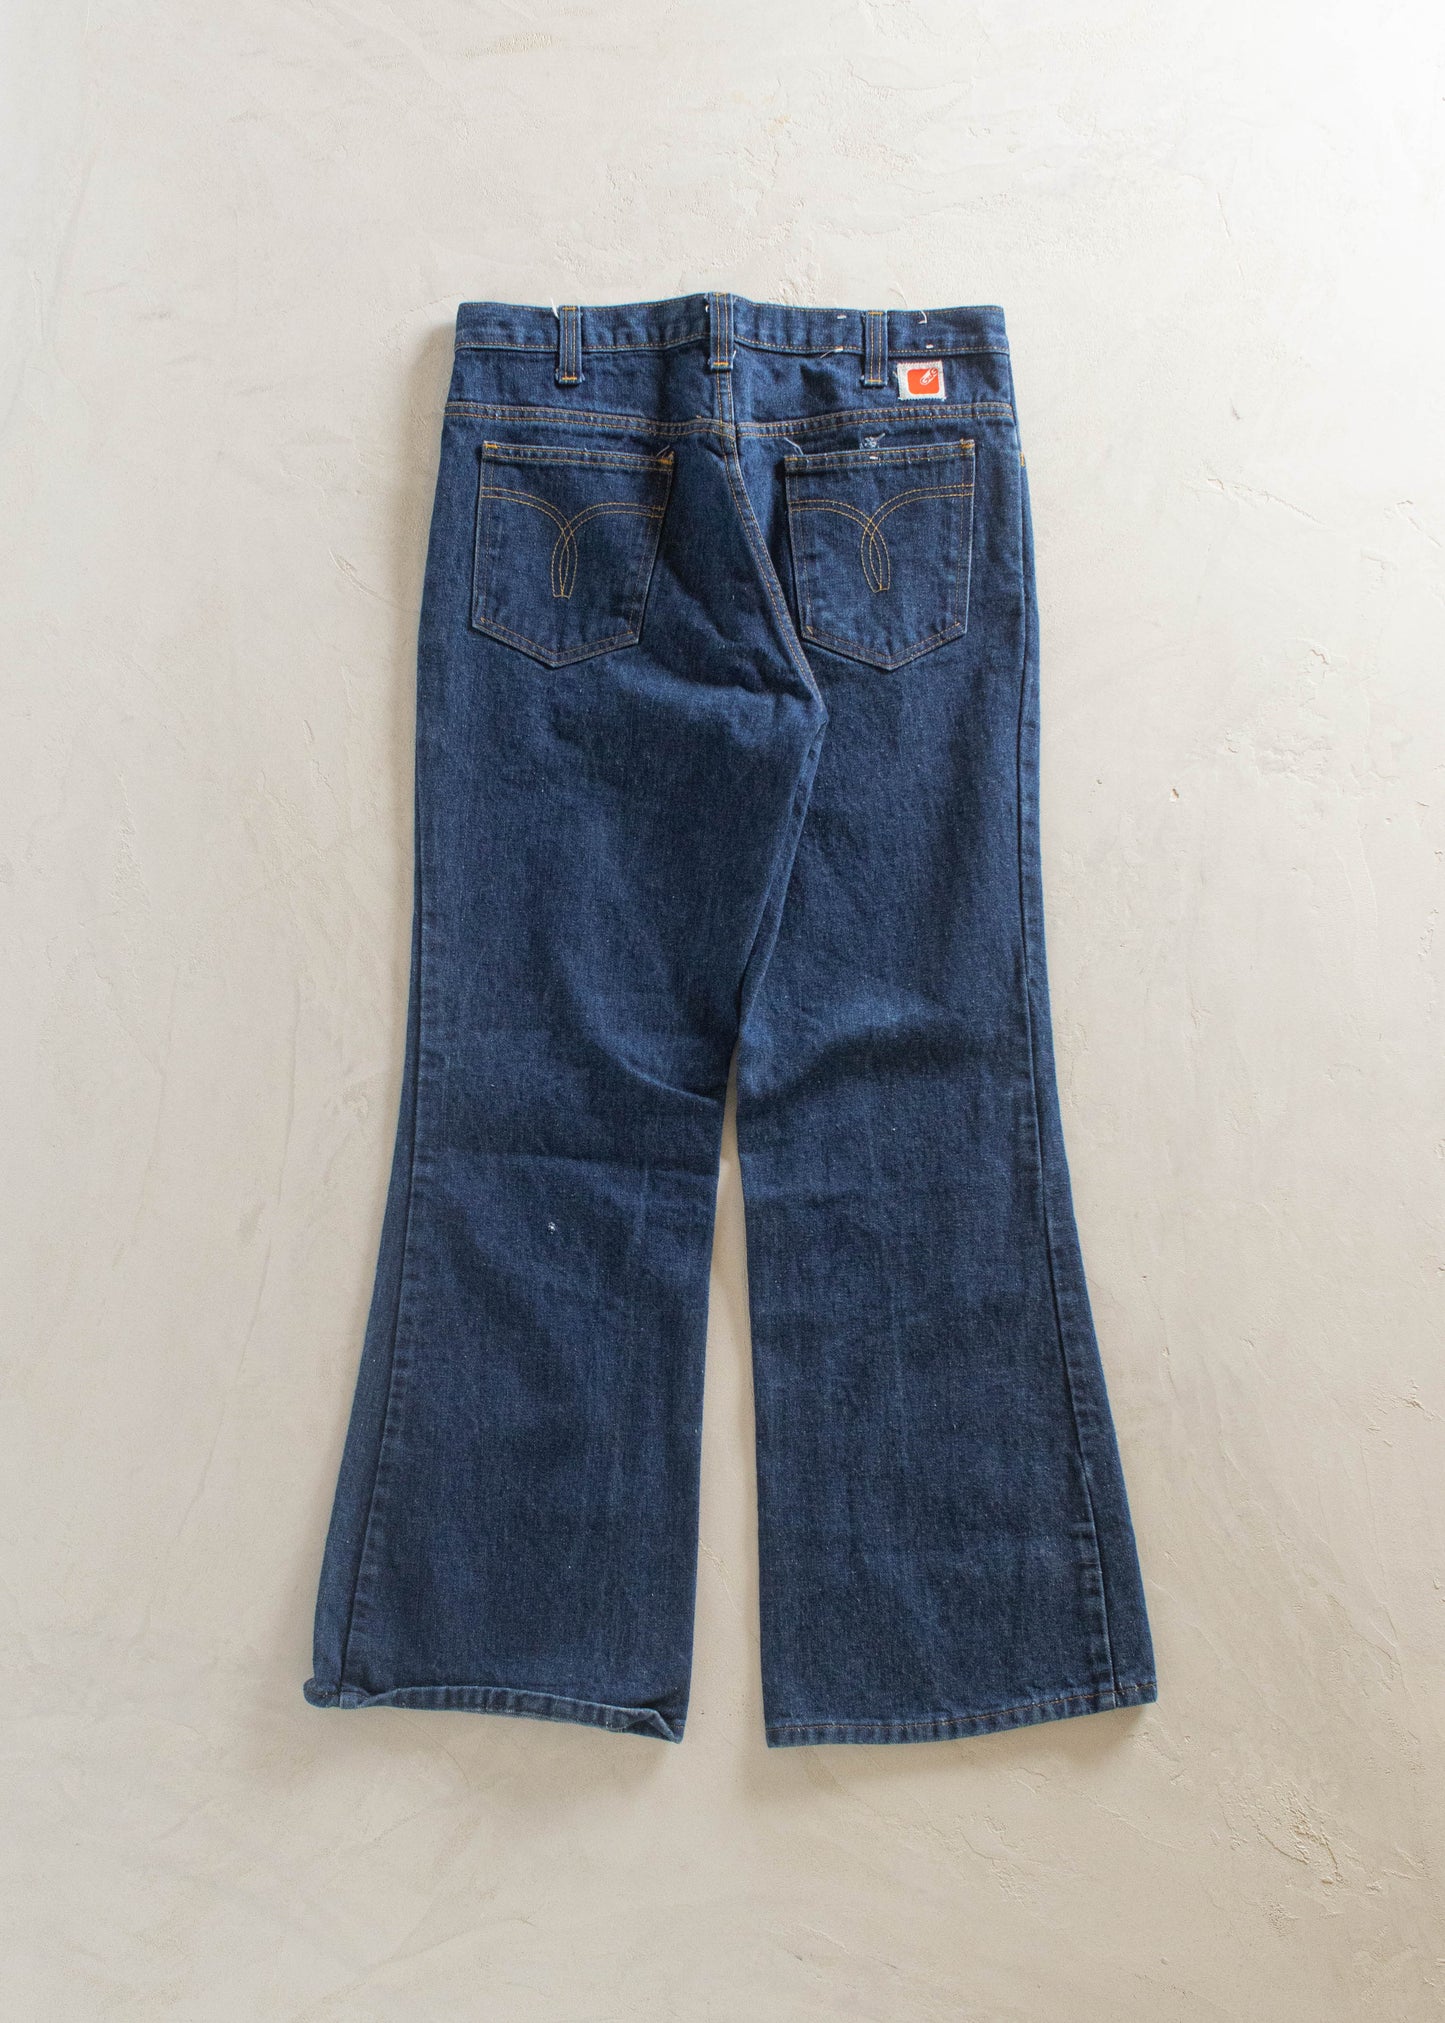 1970s GWG Darkwash Jeans Size Women's 29 Men's 32